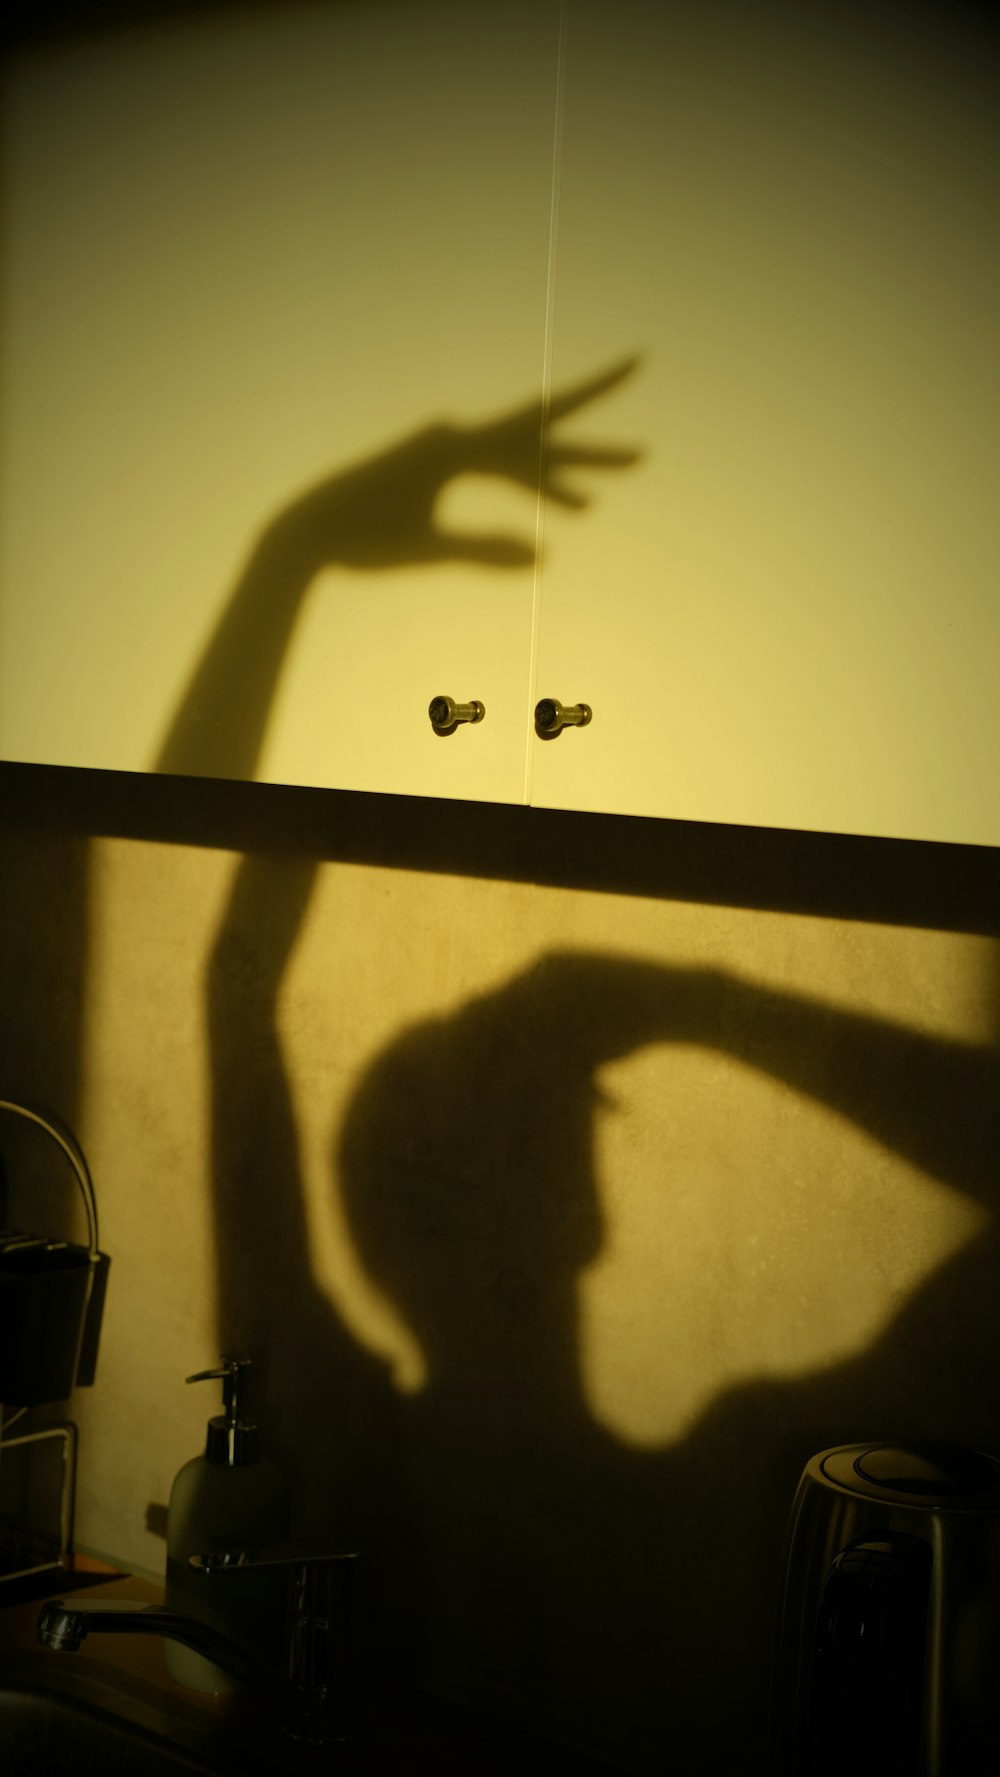 una sombra de una persona parada frente a una pared